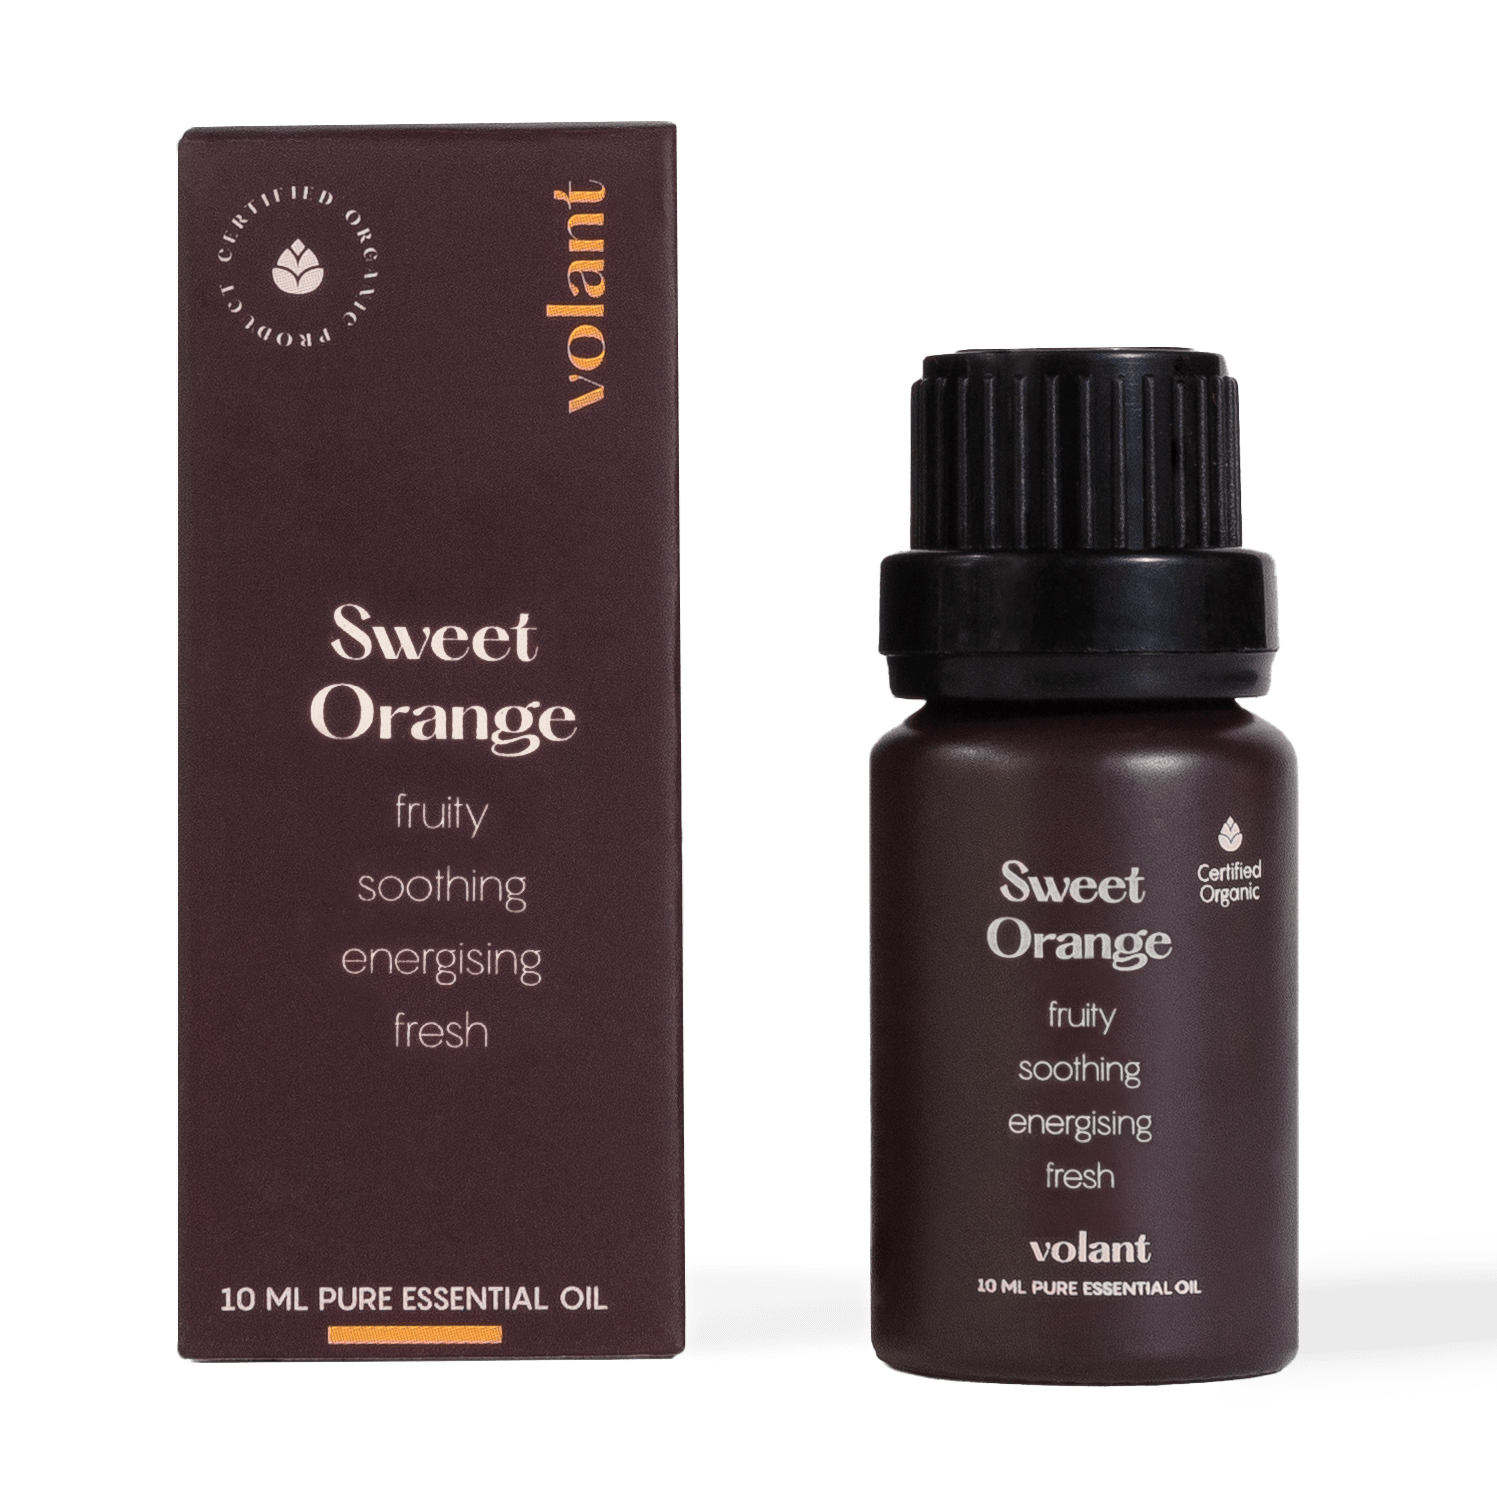 Volant ekologisk söt apelsin eterisk olja flaska förpackning för fräsch hem doft